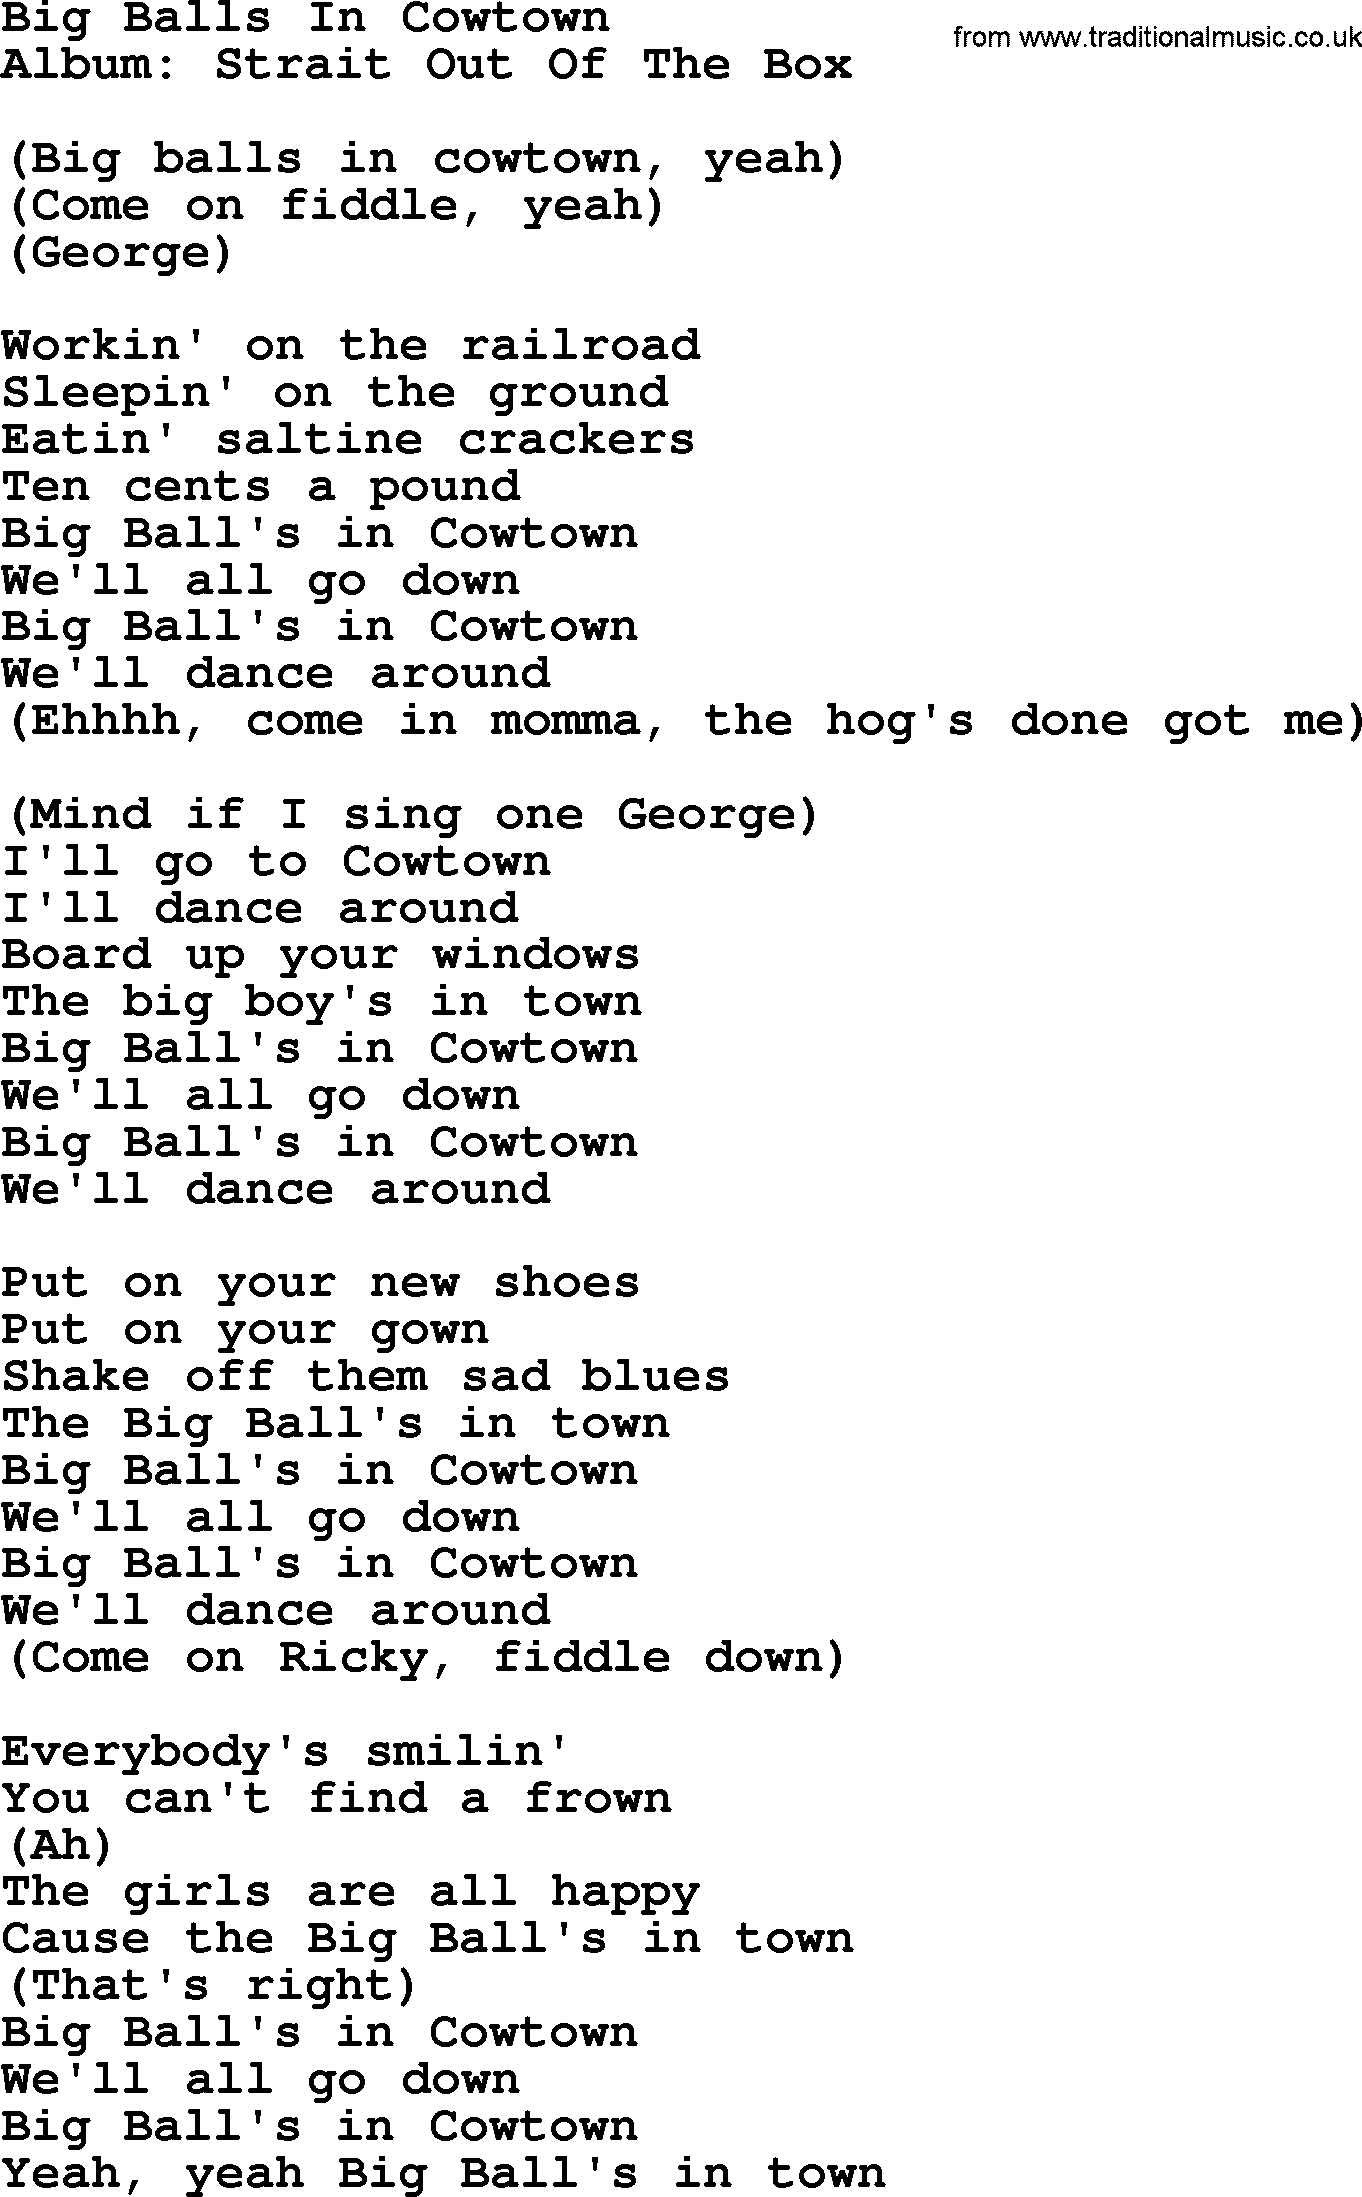 George Strait song: Big Balls In Cowtown, lyrics